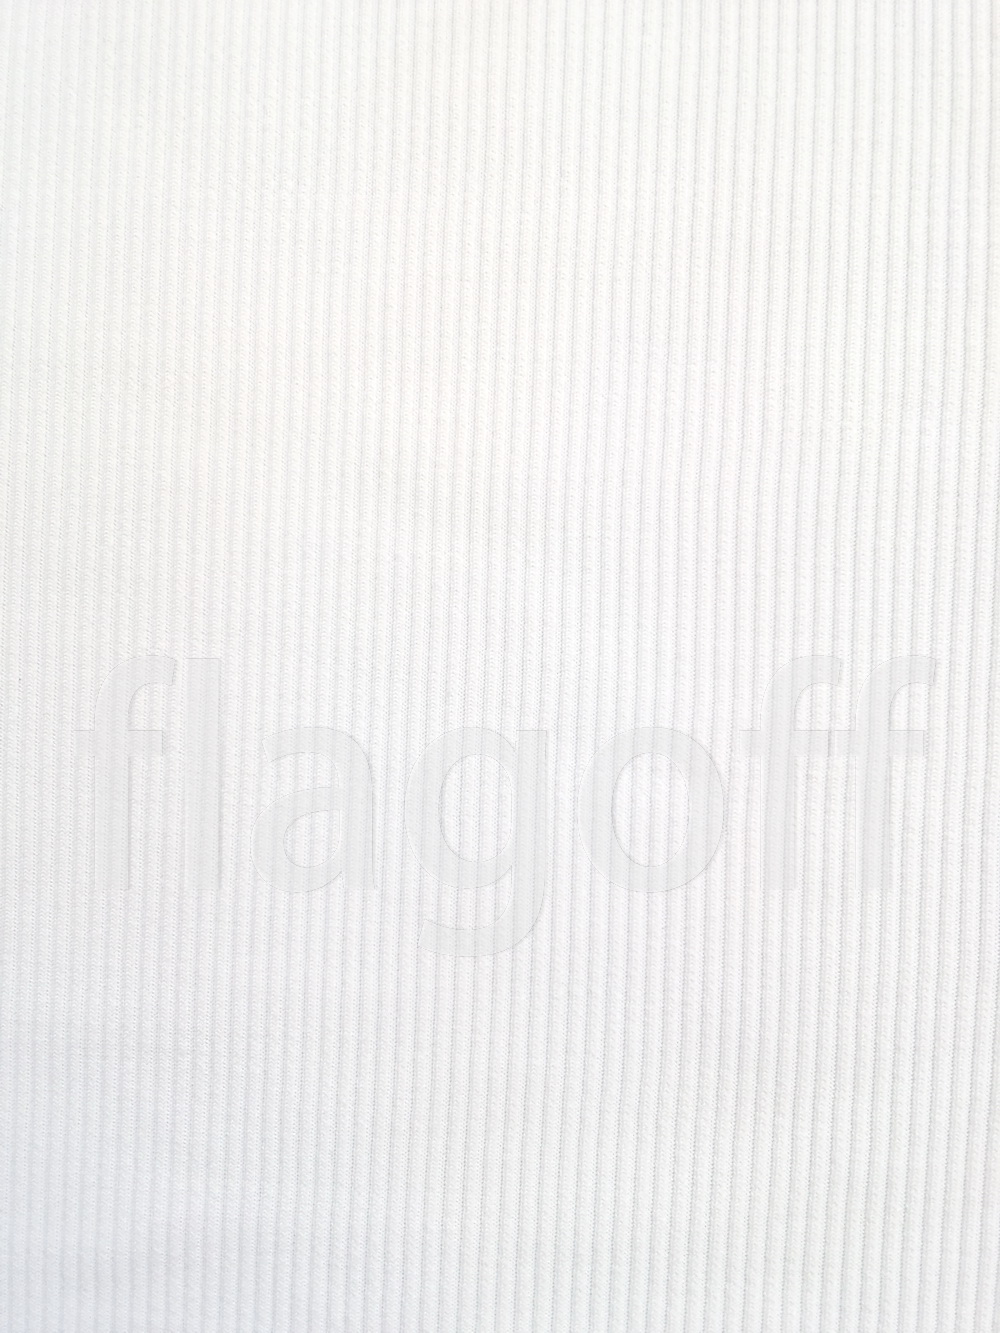 Кашкорсе  трикотажное полотно  (белый цвет), для сублимационной печати